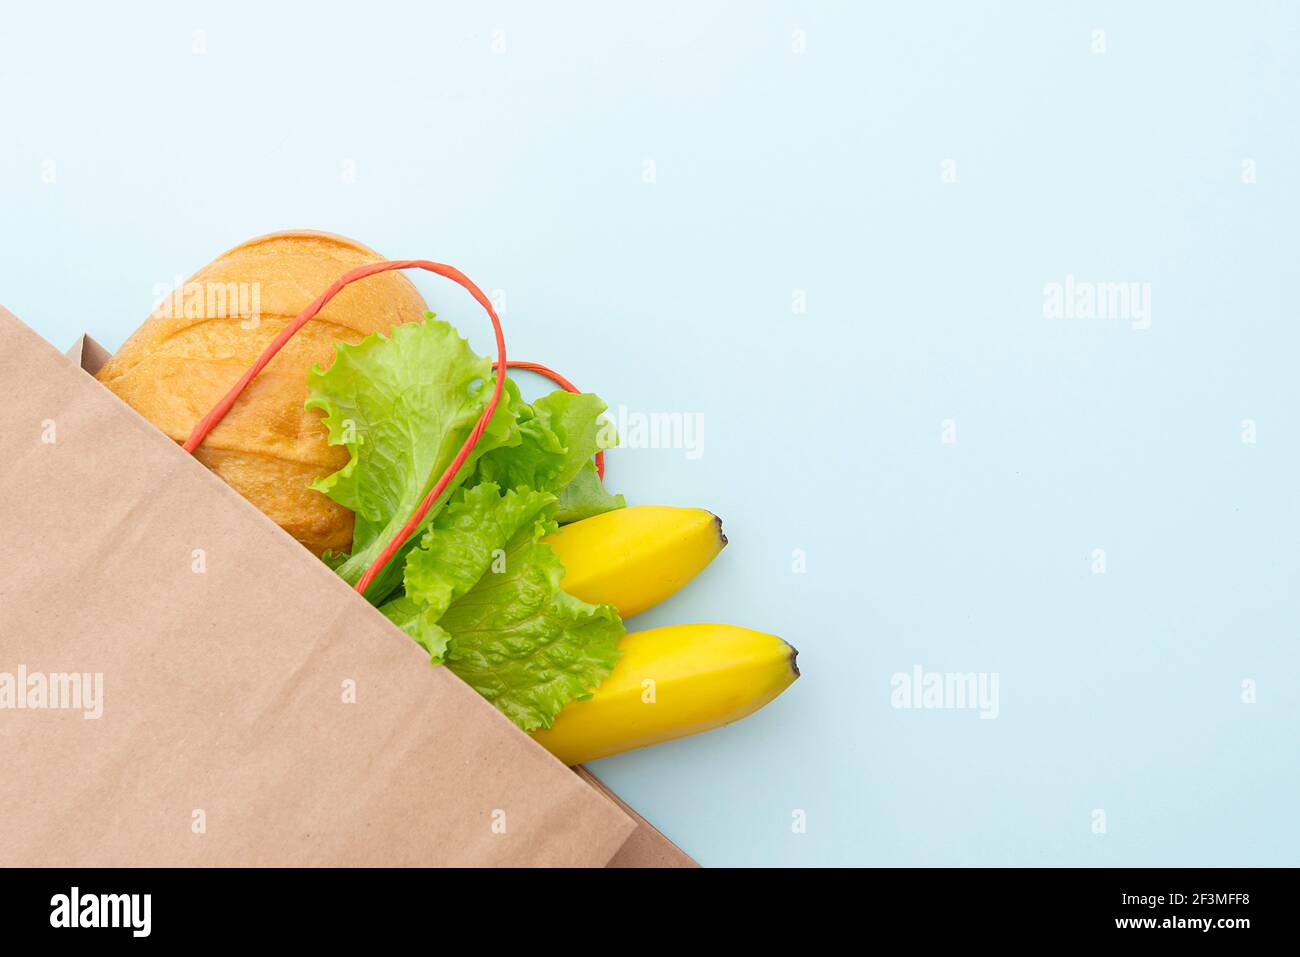 Sac de papier avec nourriture : feuilles vertes de salade, pain et banane. Disposer sur fond bleu, vue de dessus Banque D'Images